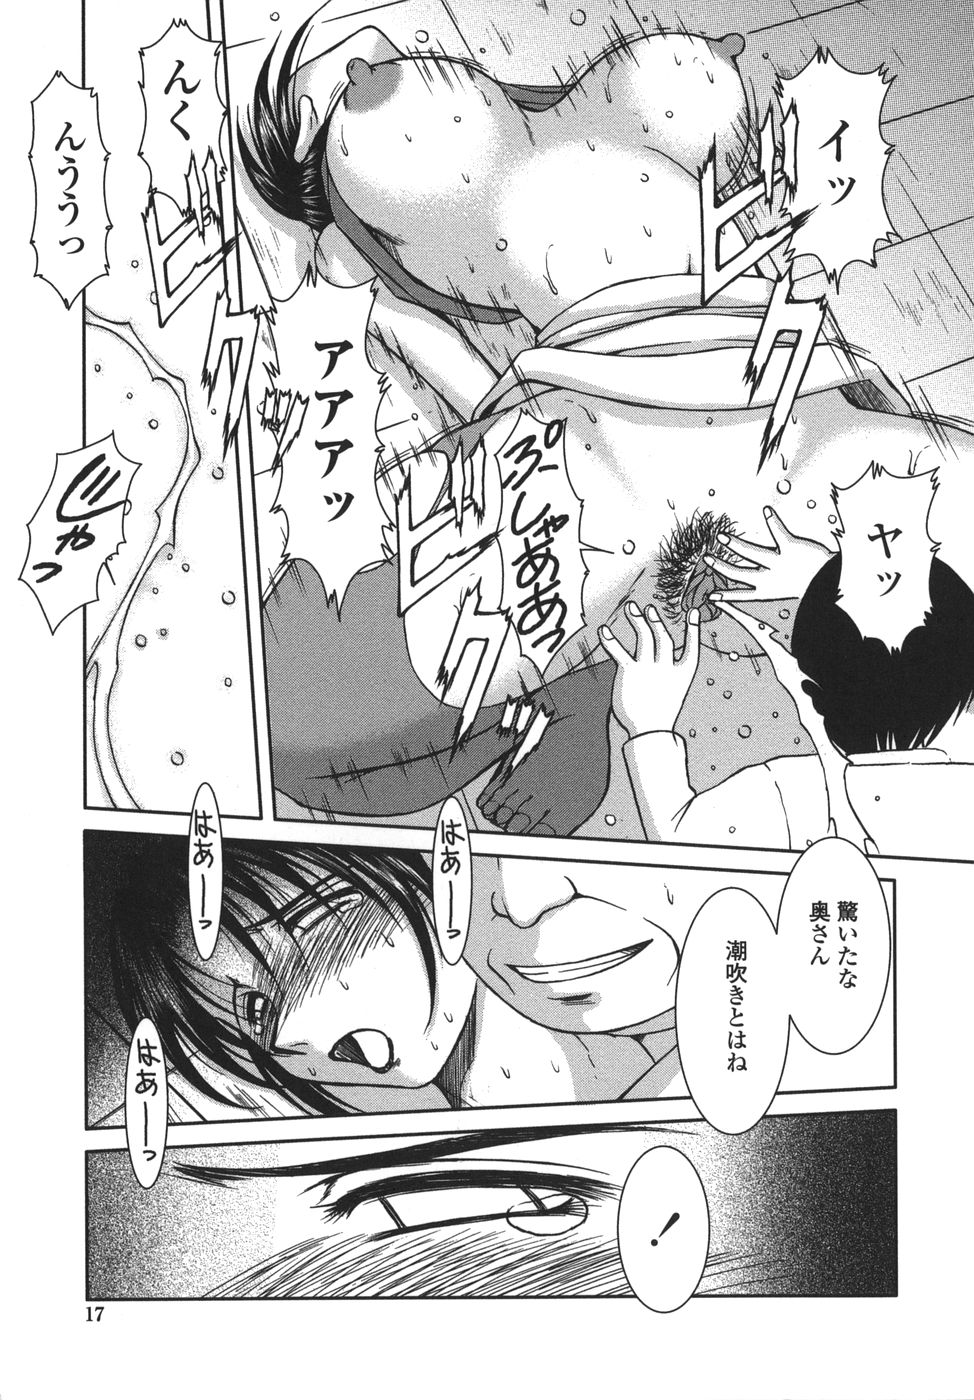 [Shuusaku Chiba] Sunaba no Aruji page 17 full